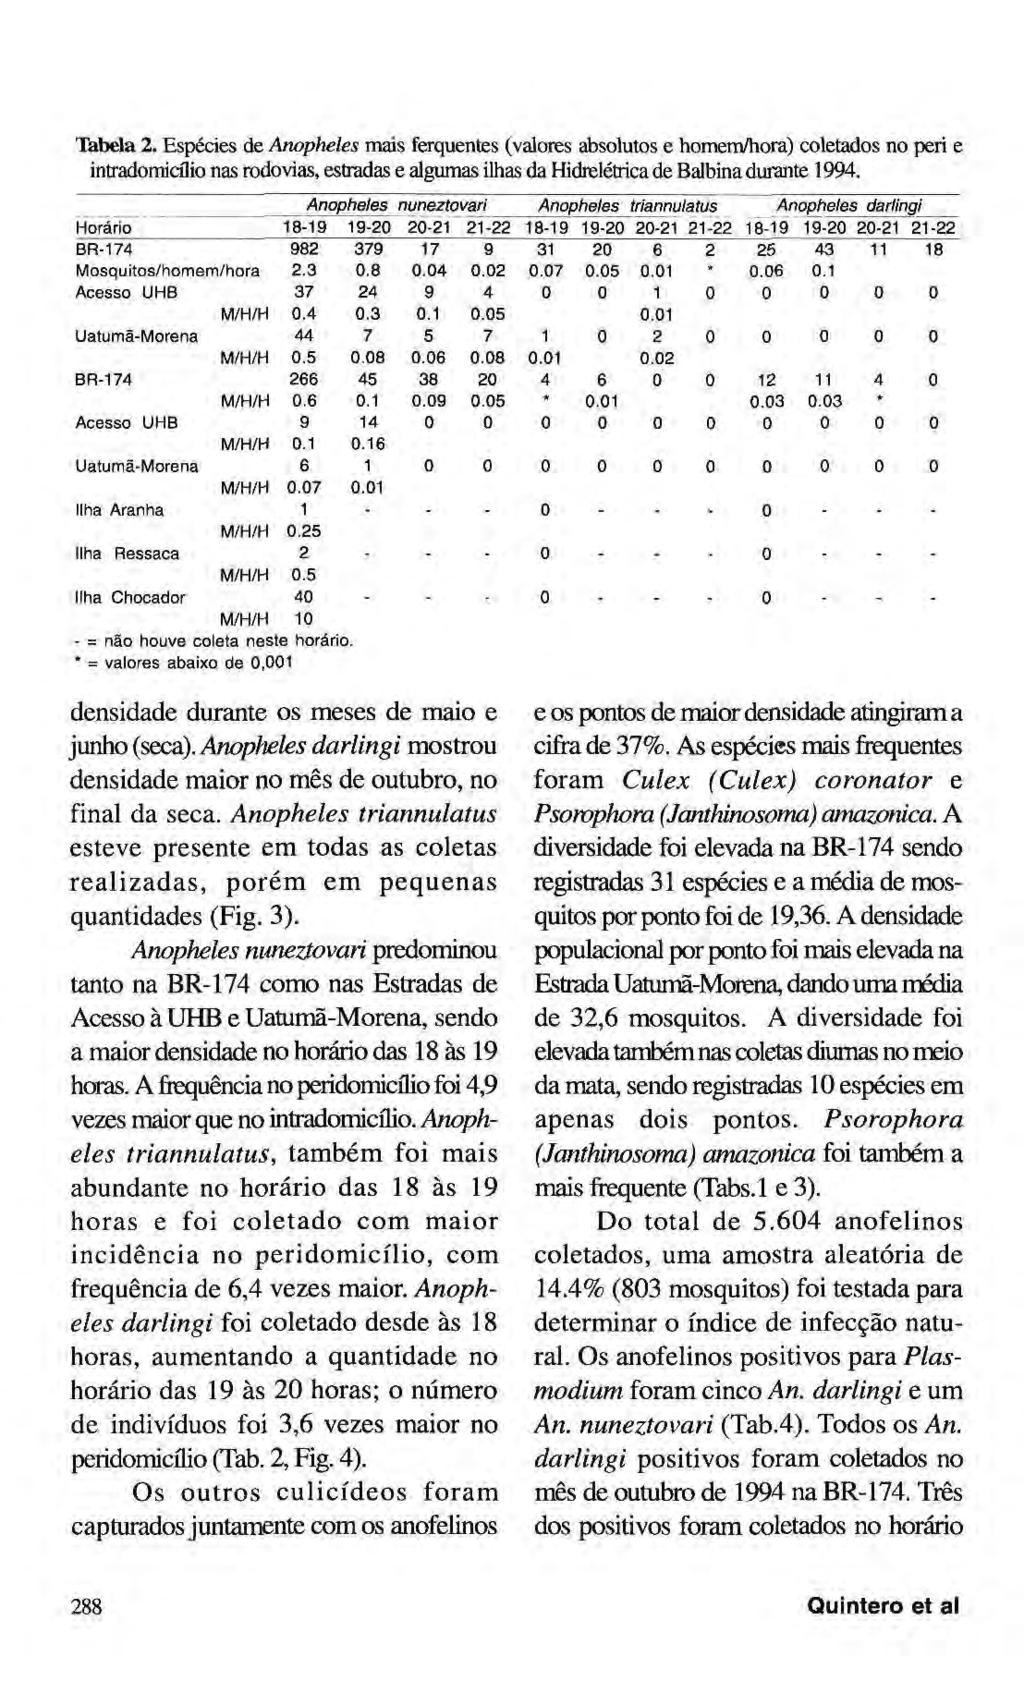 Tabela 2. Espécies de Anopheles mais ferquentes (valores absolutos e homem/hora) coletados no peri e intradomicílio nas rodovias, estradas e algumas ilhas da Hidrelétrica de Balbina durante 1994.